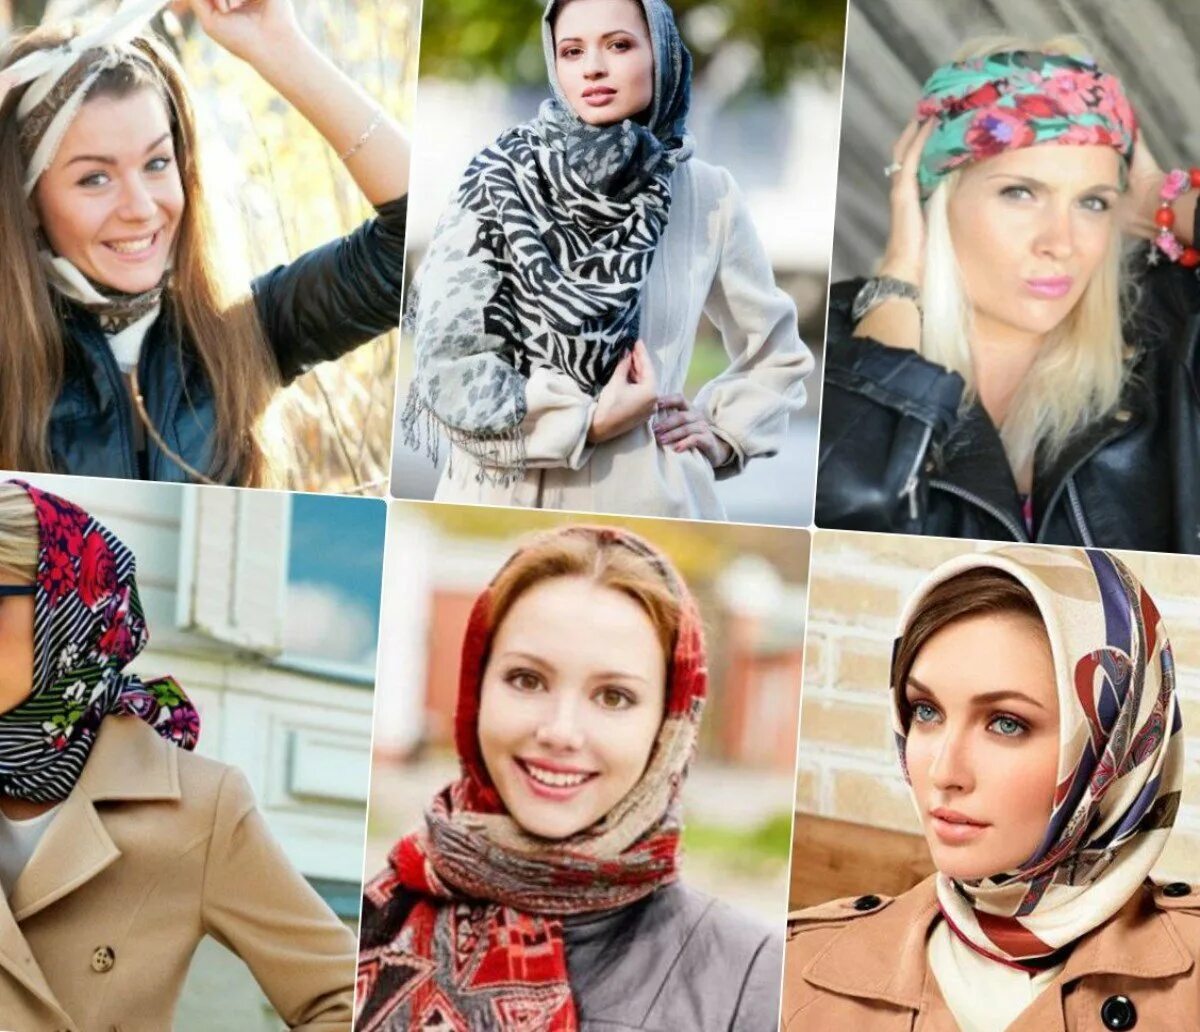 Как завязывать шарф на голову вместо шапки